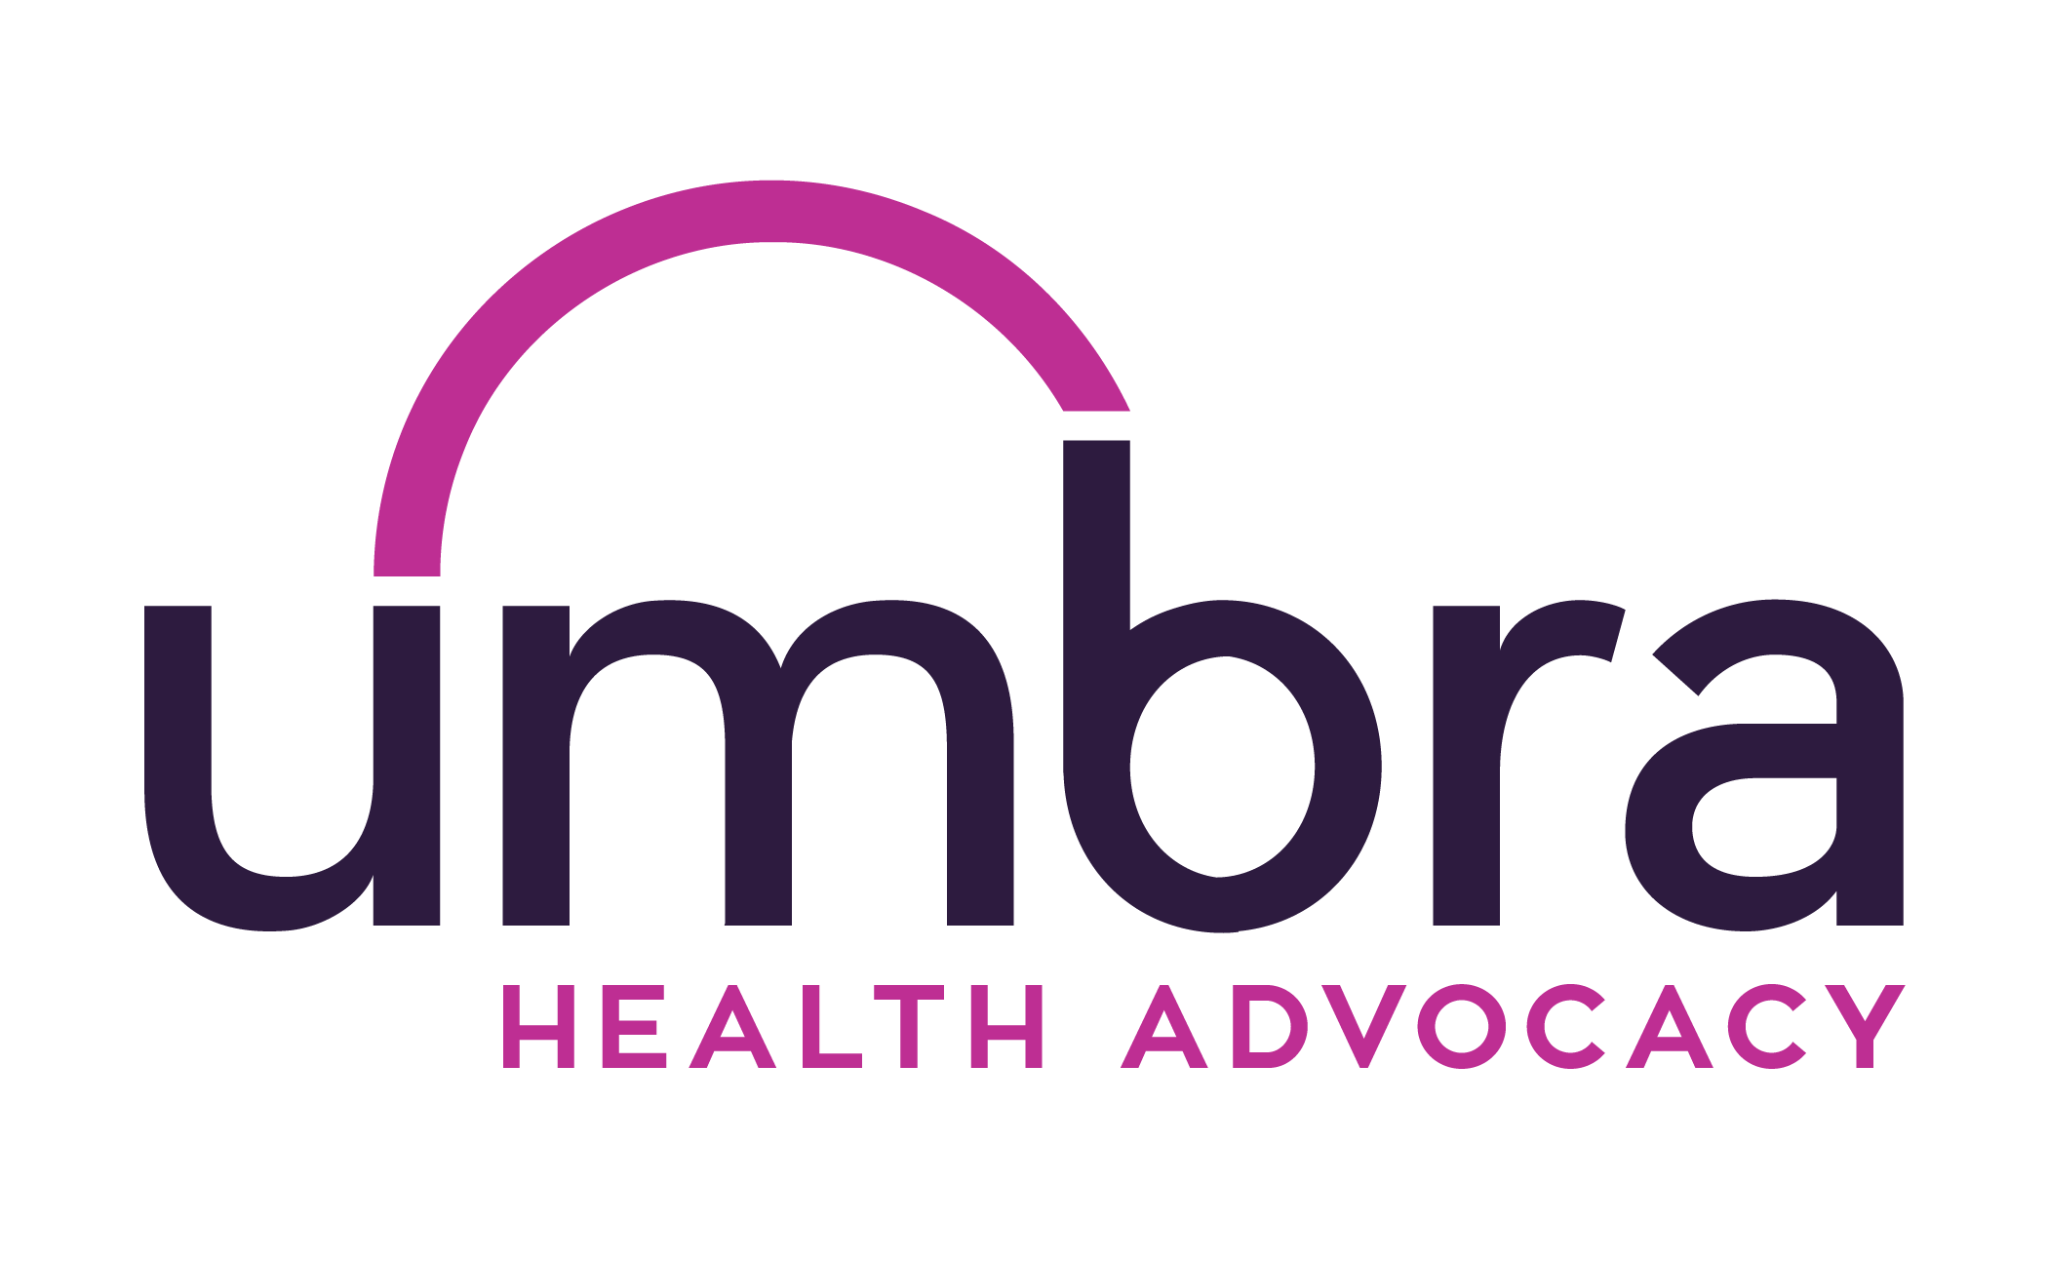 Umbra Health Advocacy logo